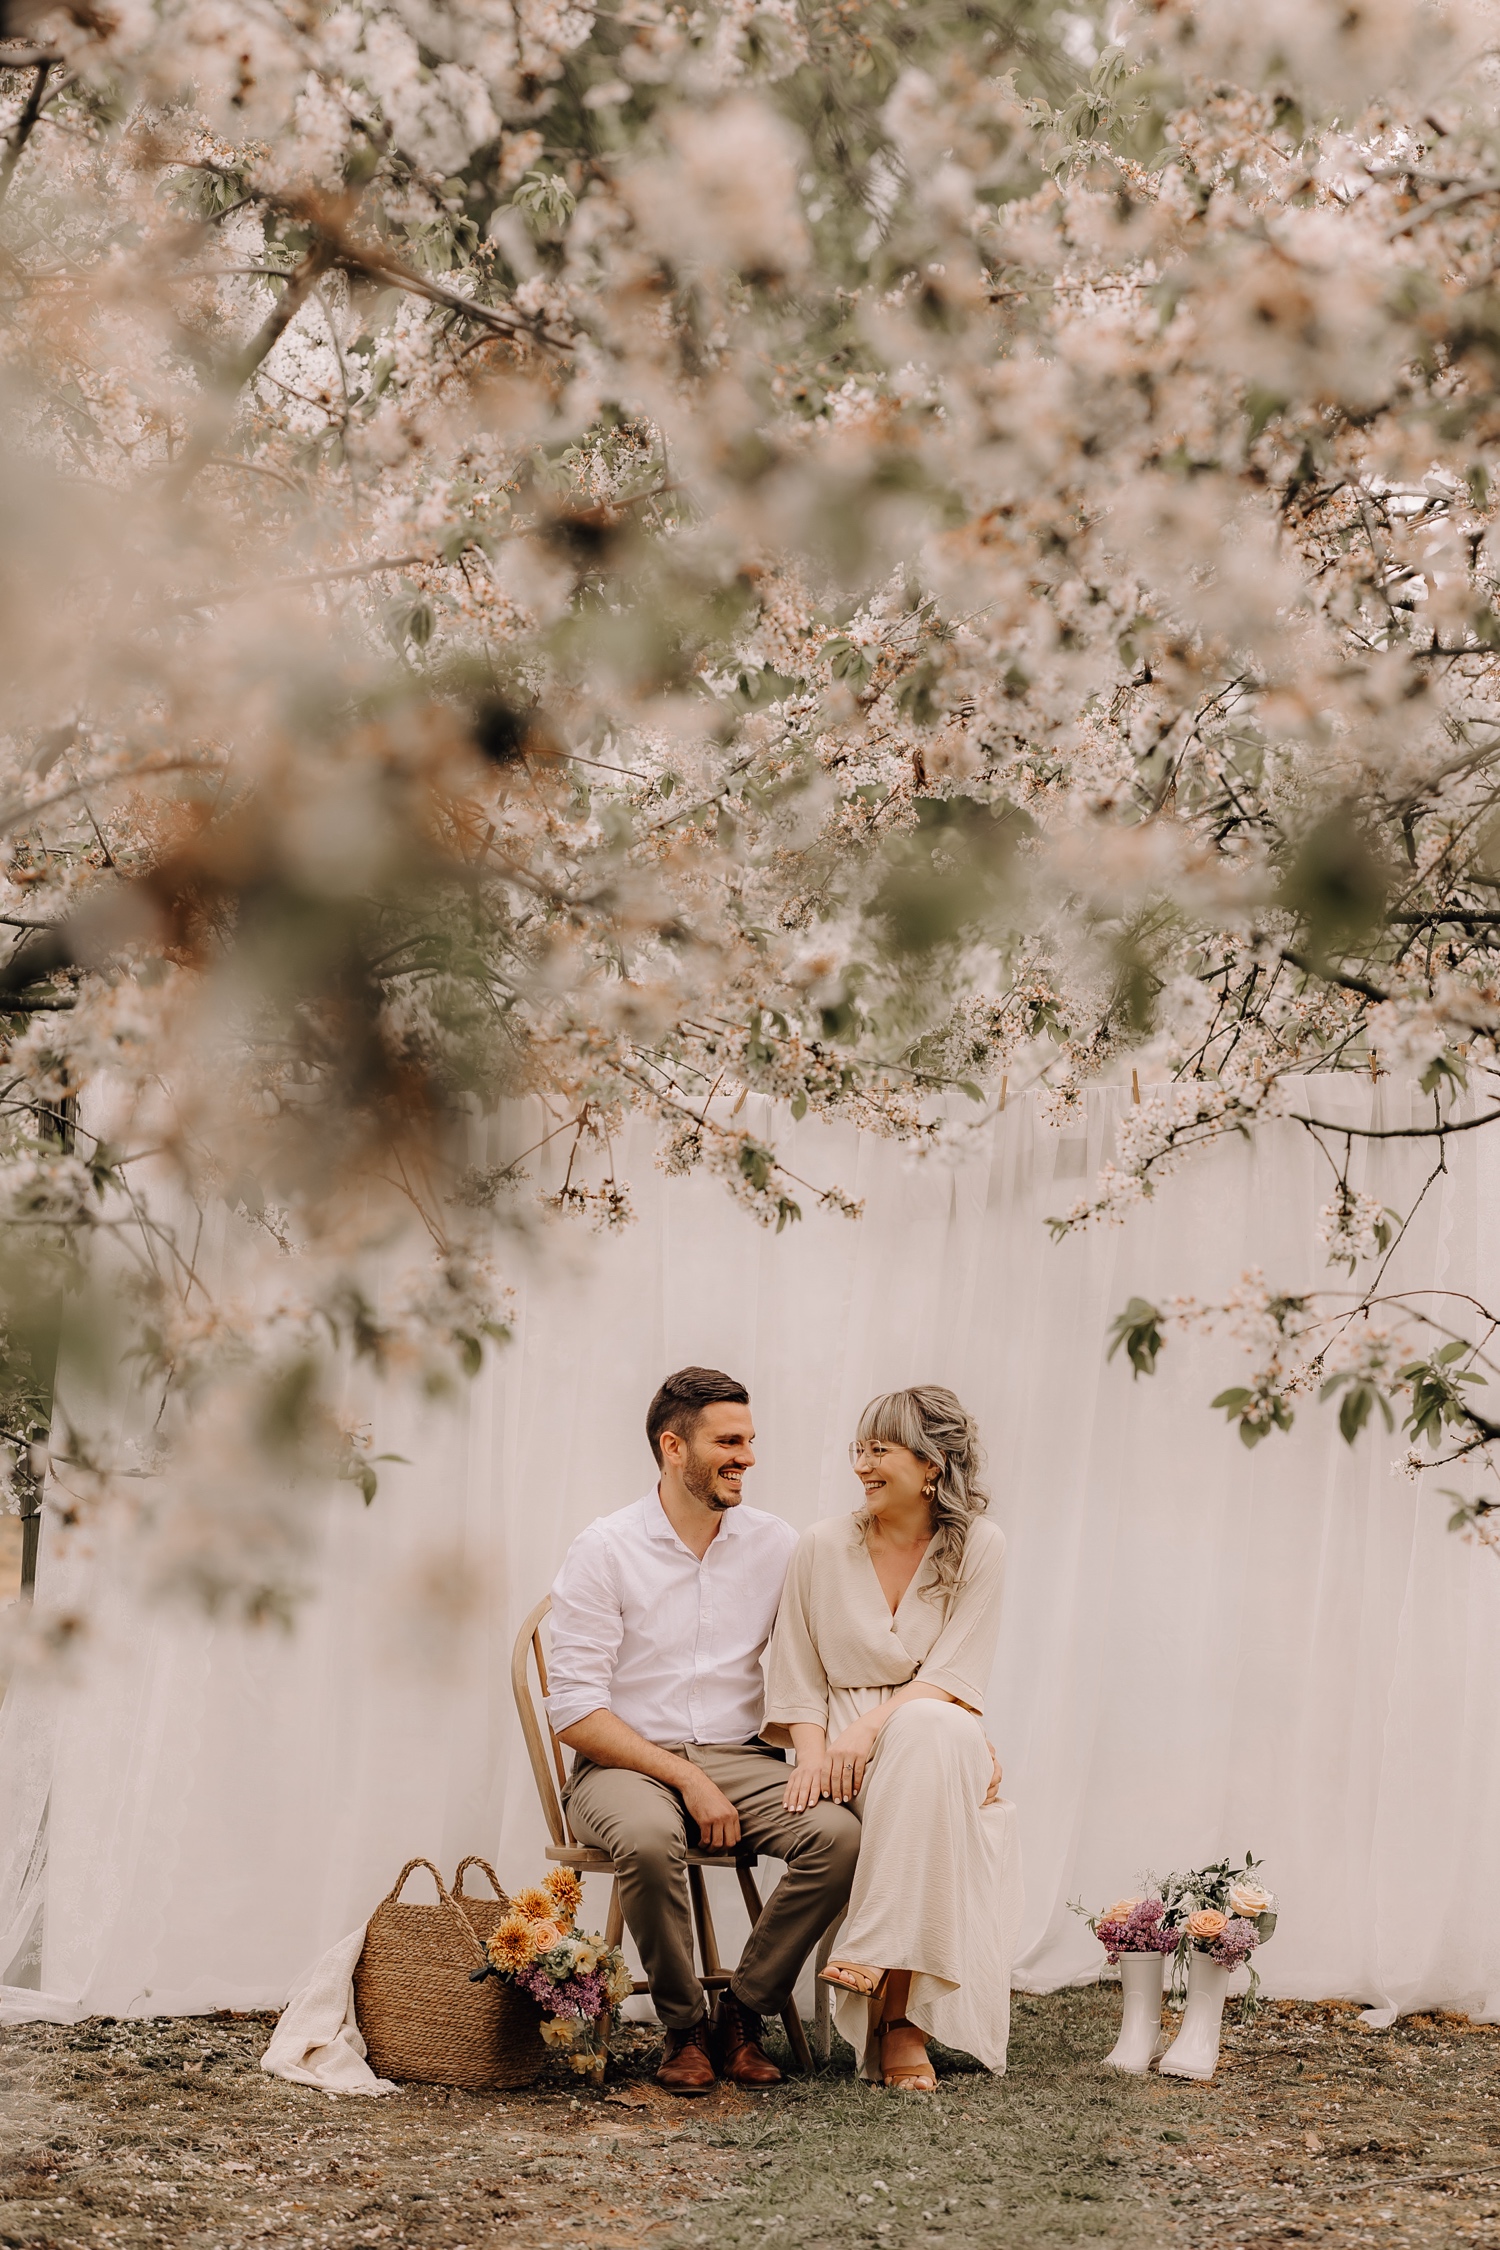 Huwelijksfotograaf Limburg - koppel poseert op stoel tussen de bloesems